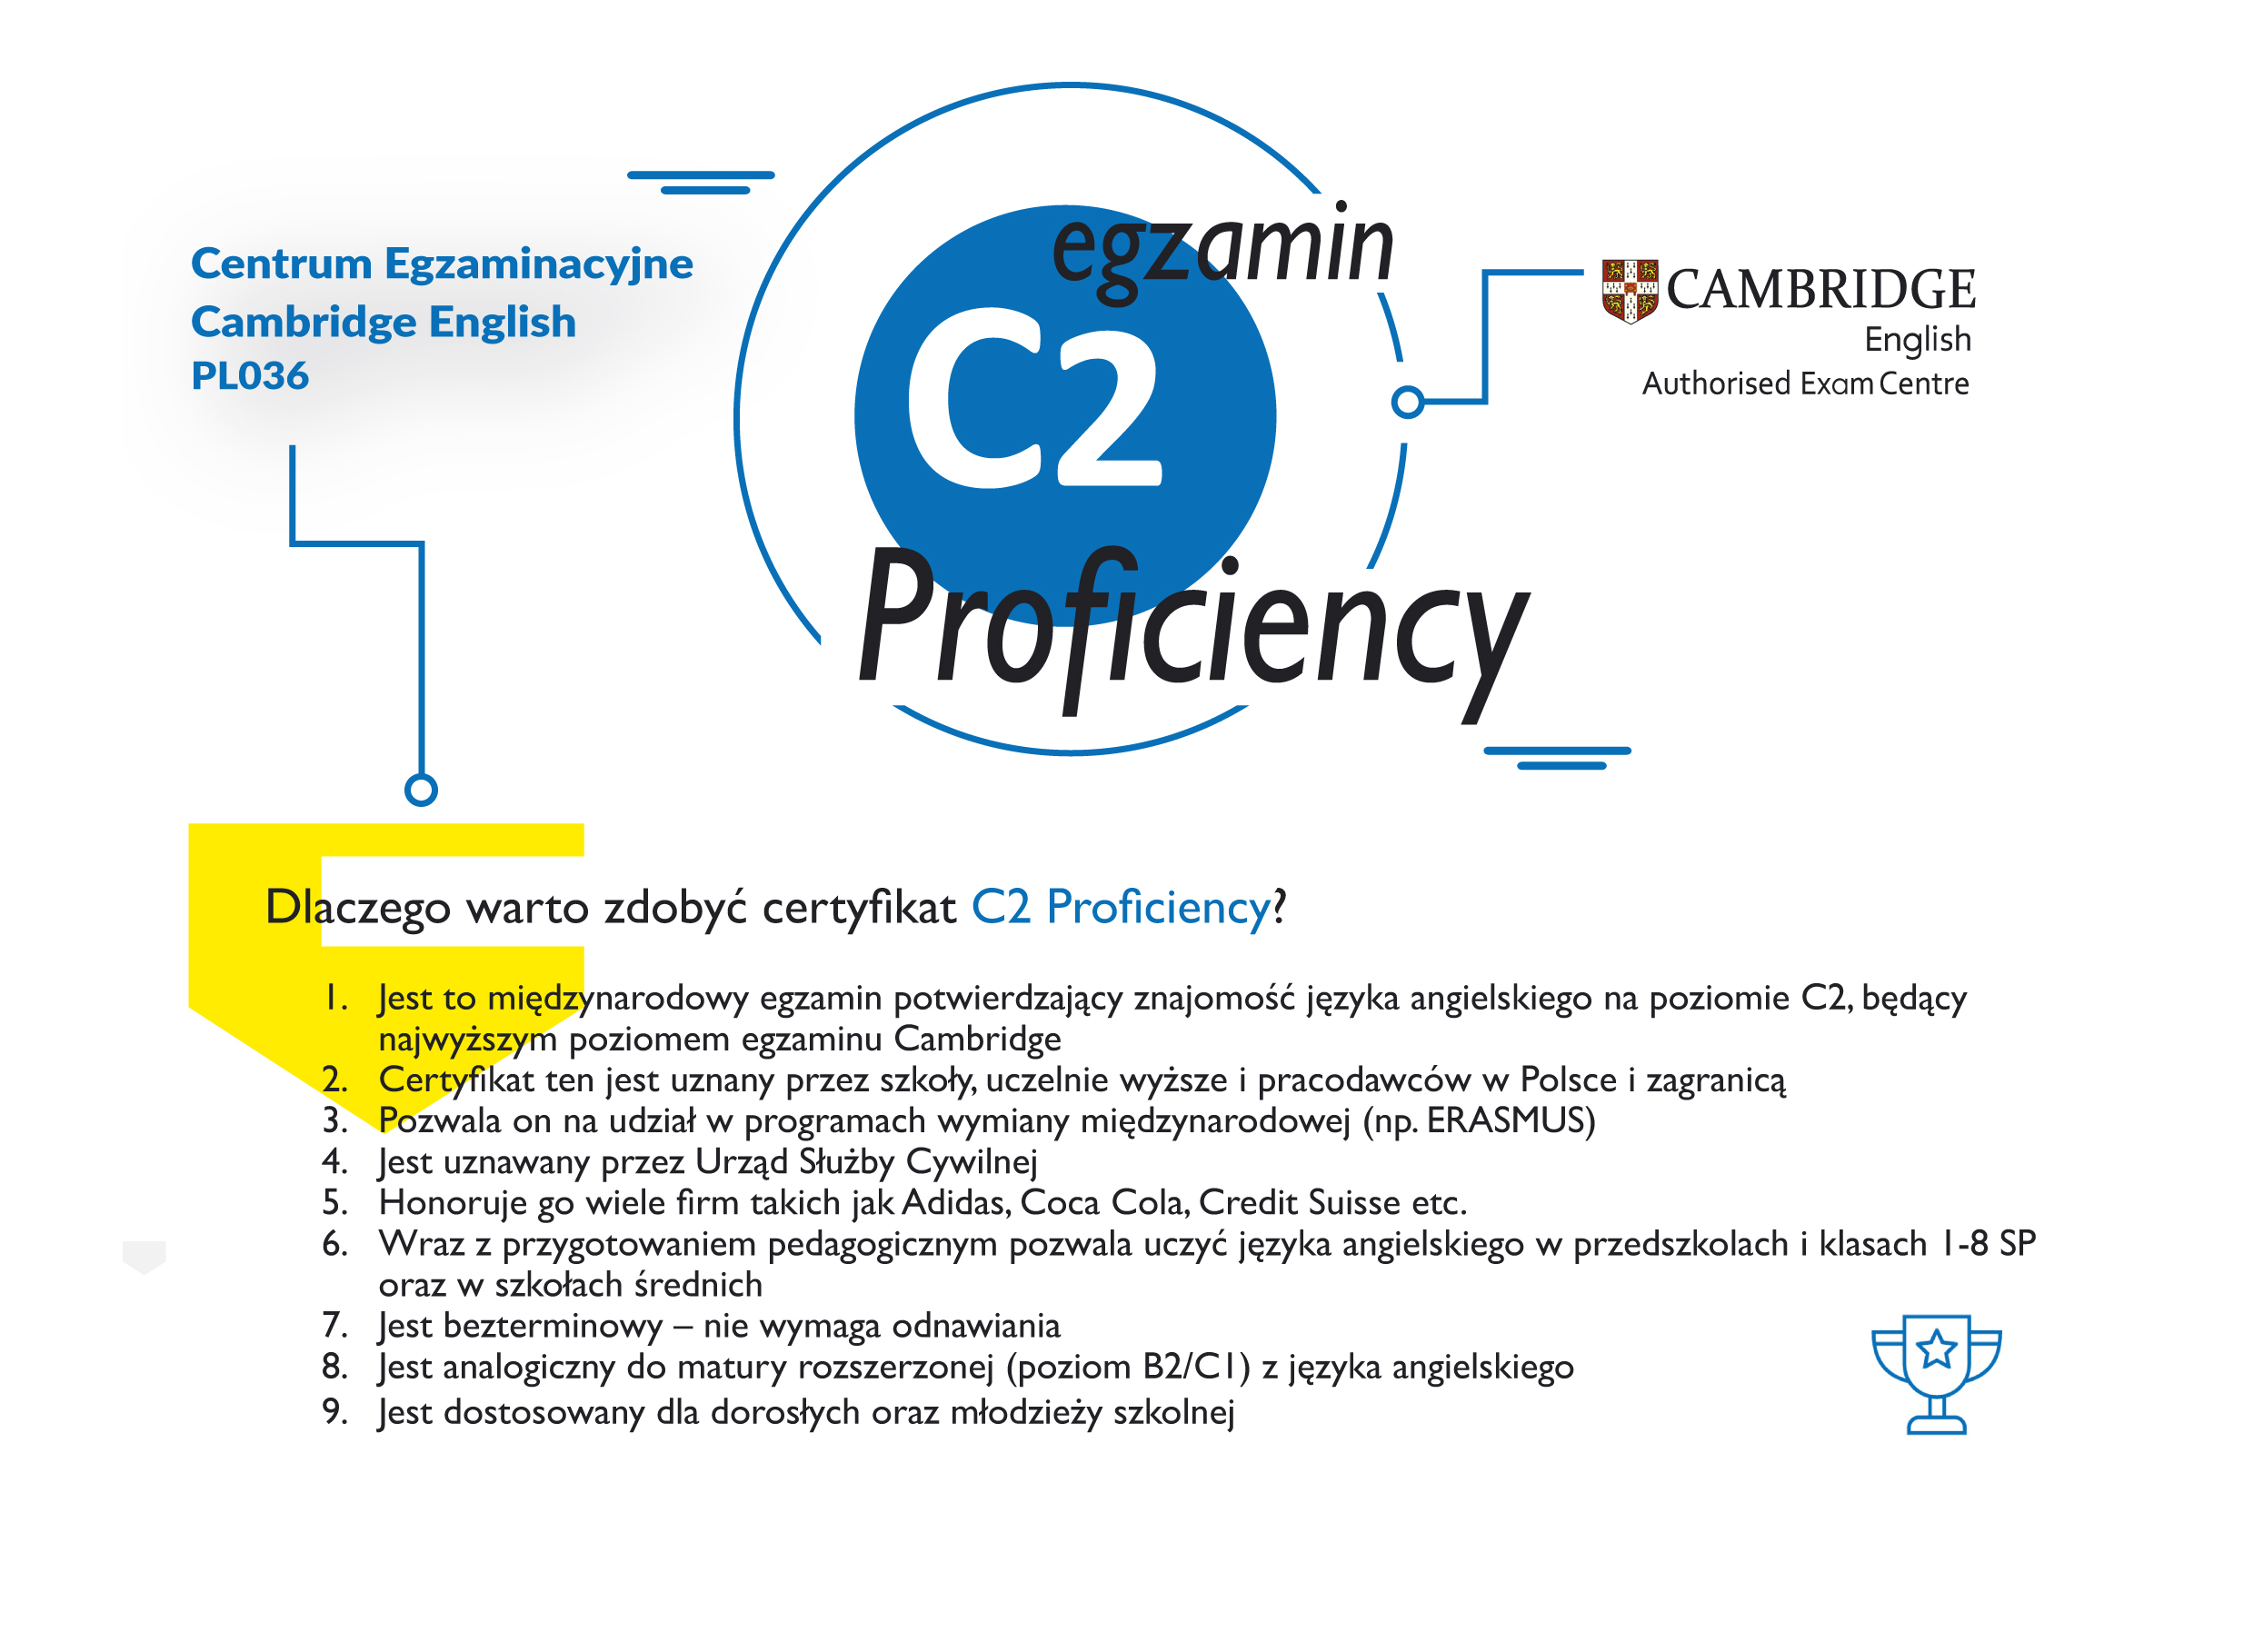 Dlaczego warto zdawać egzamin (CPE) C2 Proficiency